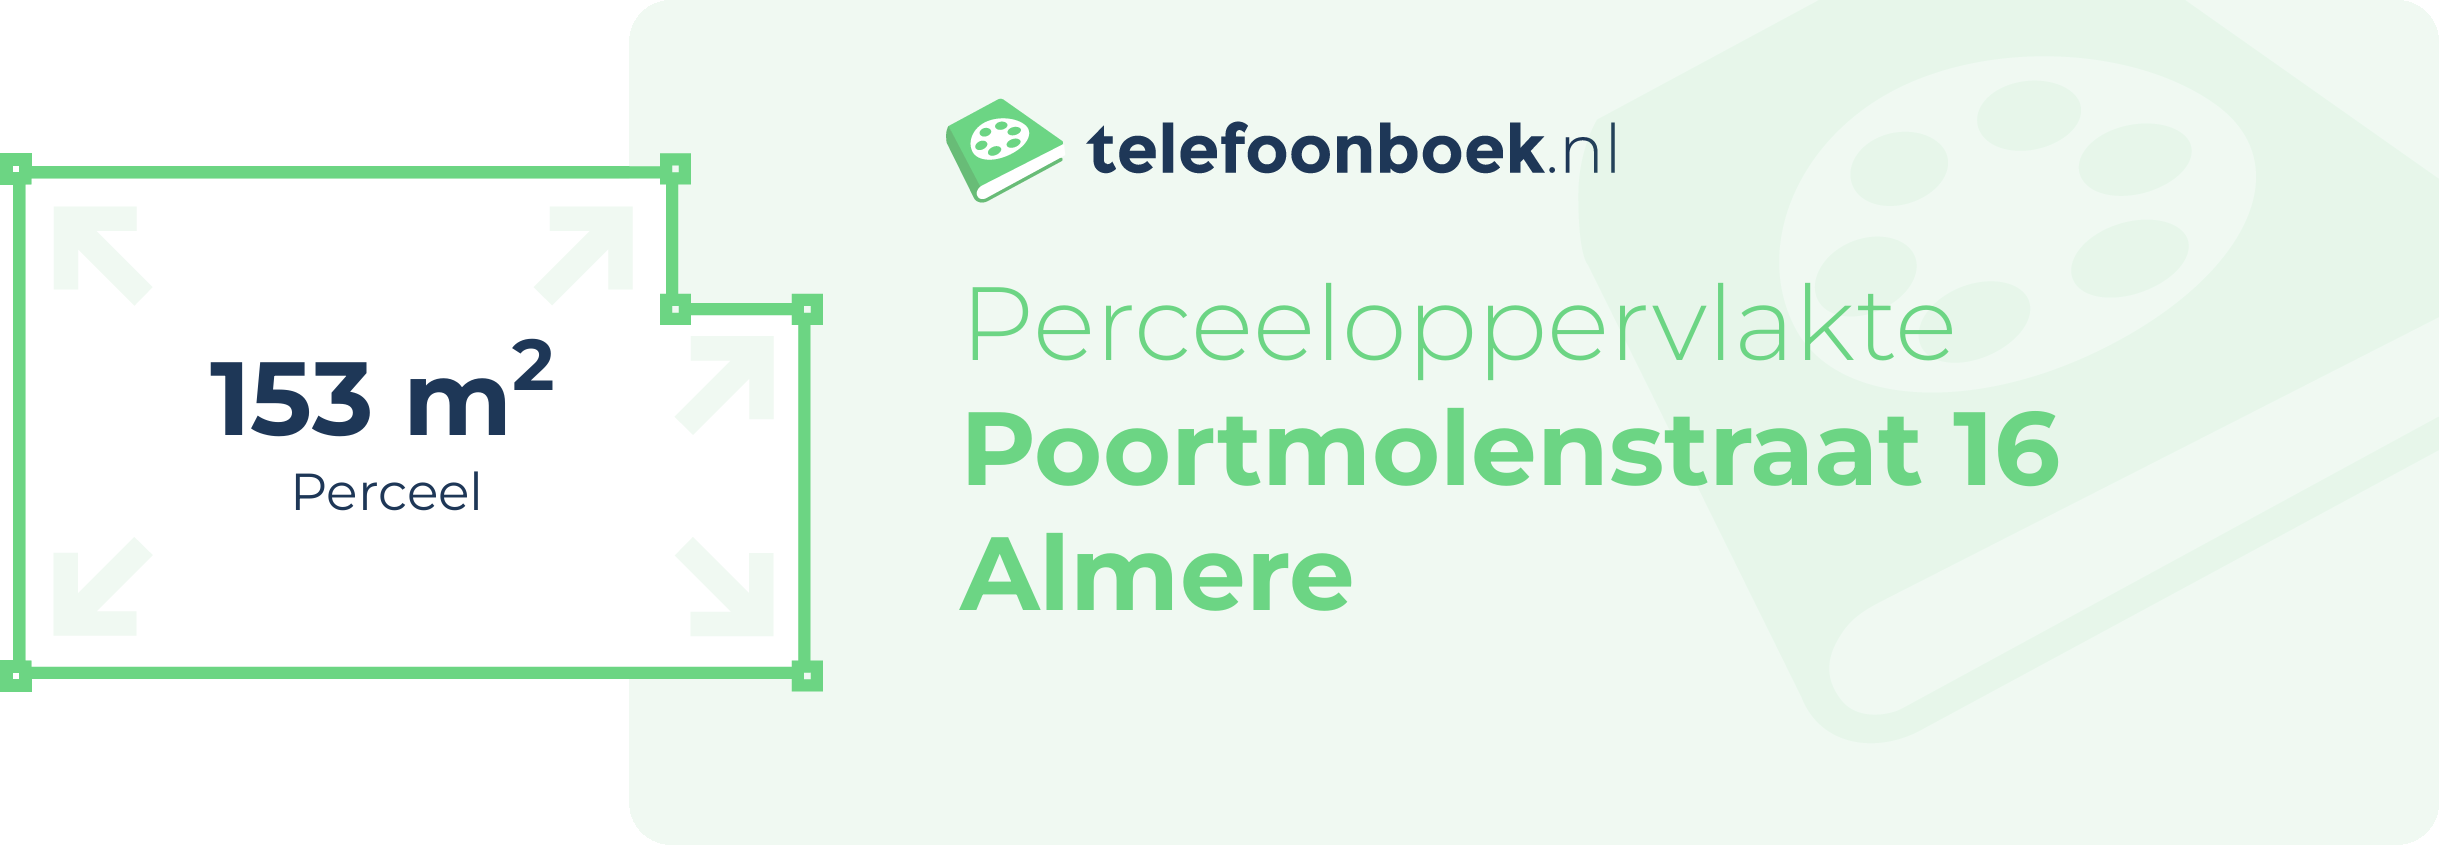 Perceeloppervlakte Poortmolenstraat 16 Almere